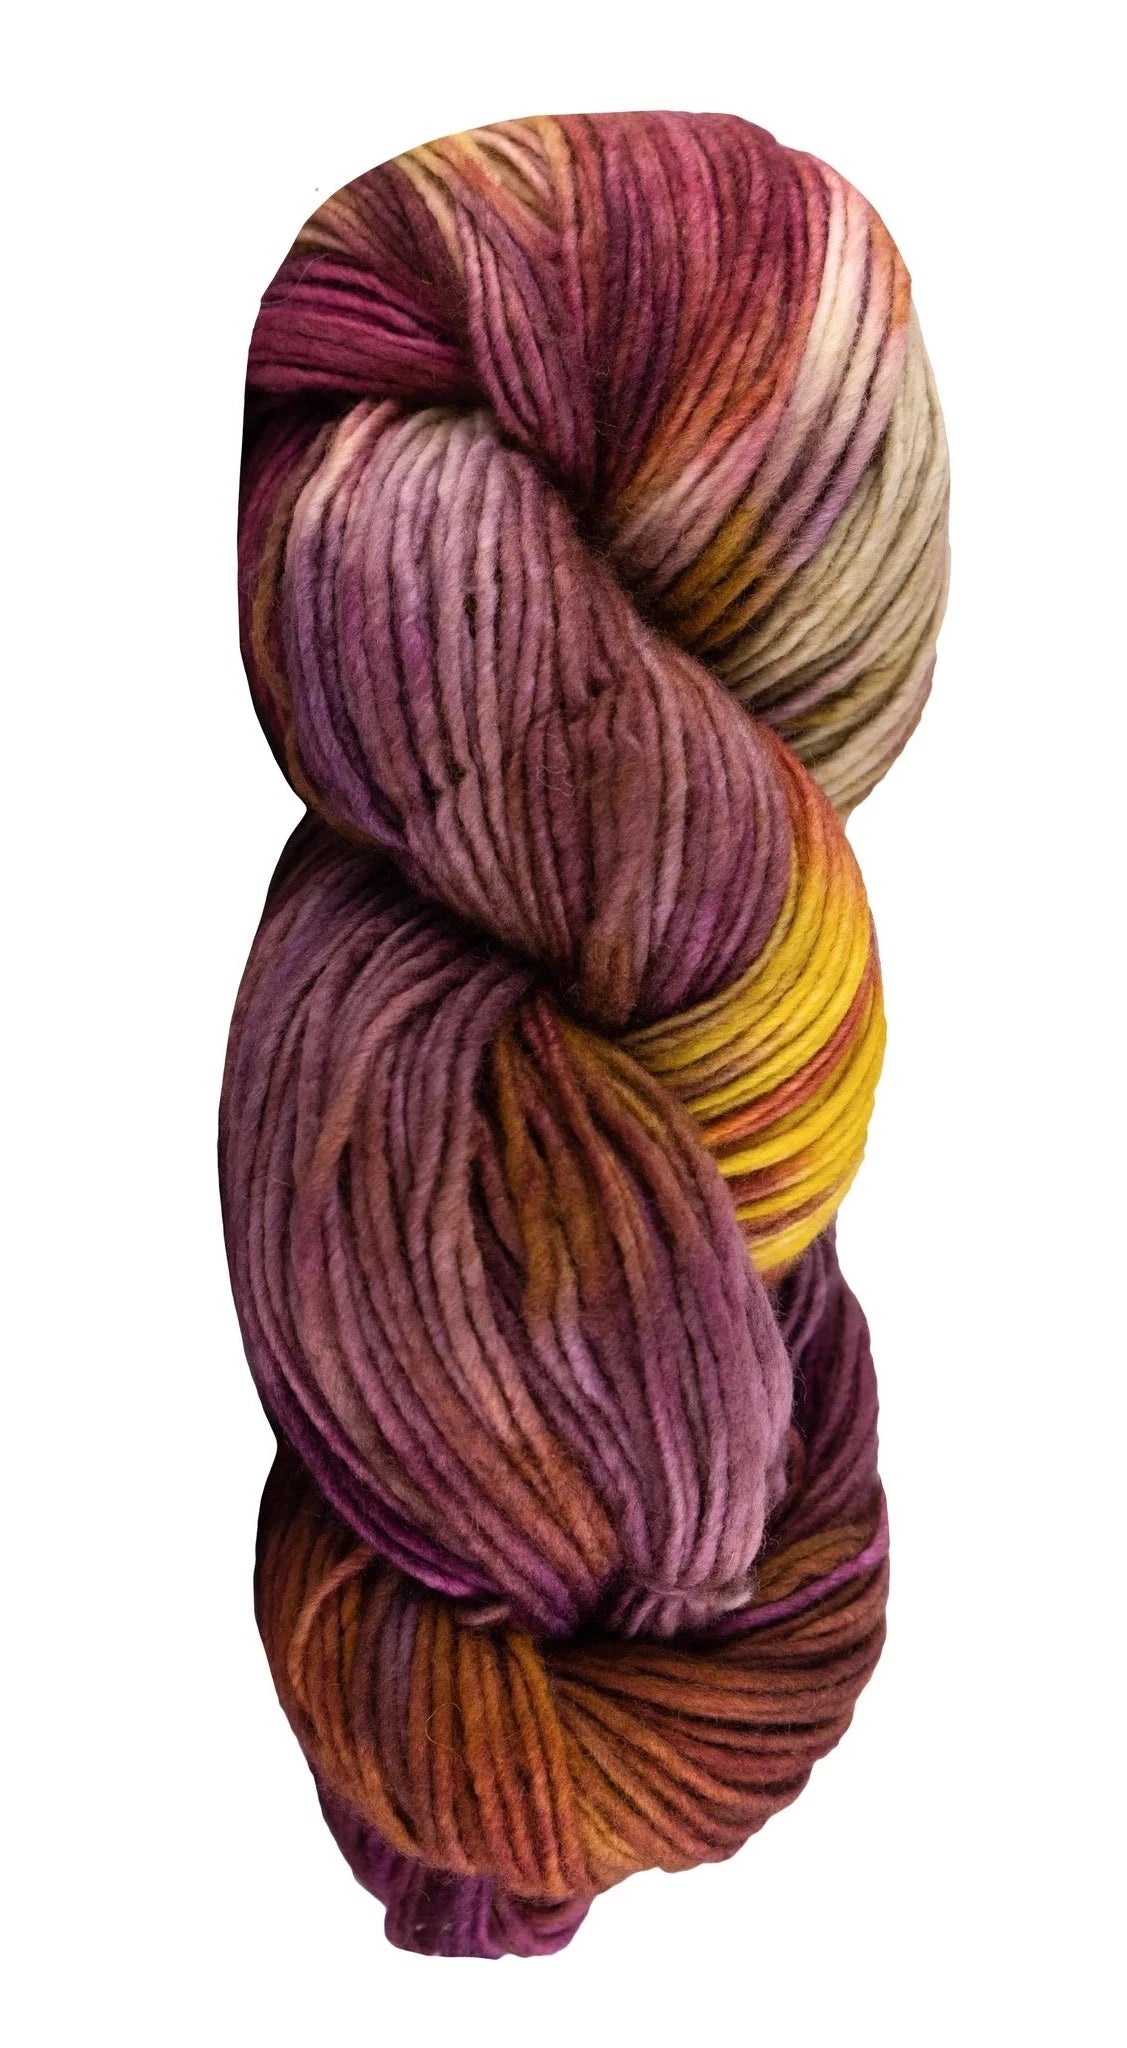 Manos Del Uruguay Maxima yarn color purple and yellow